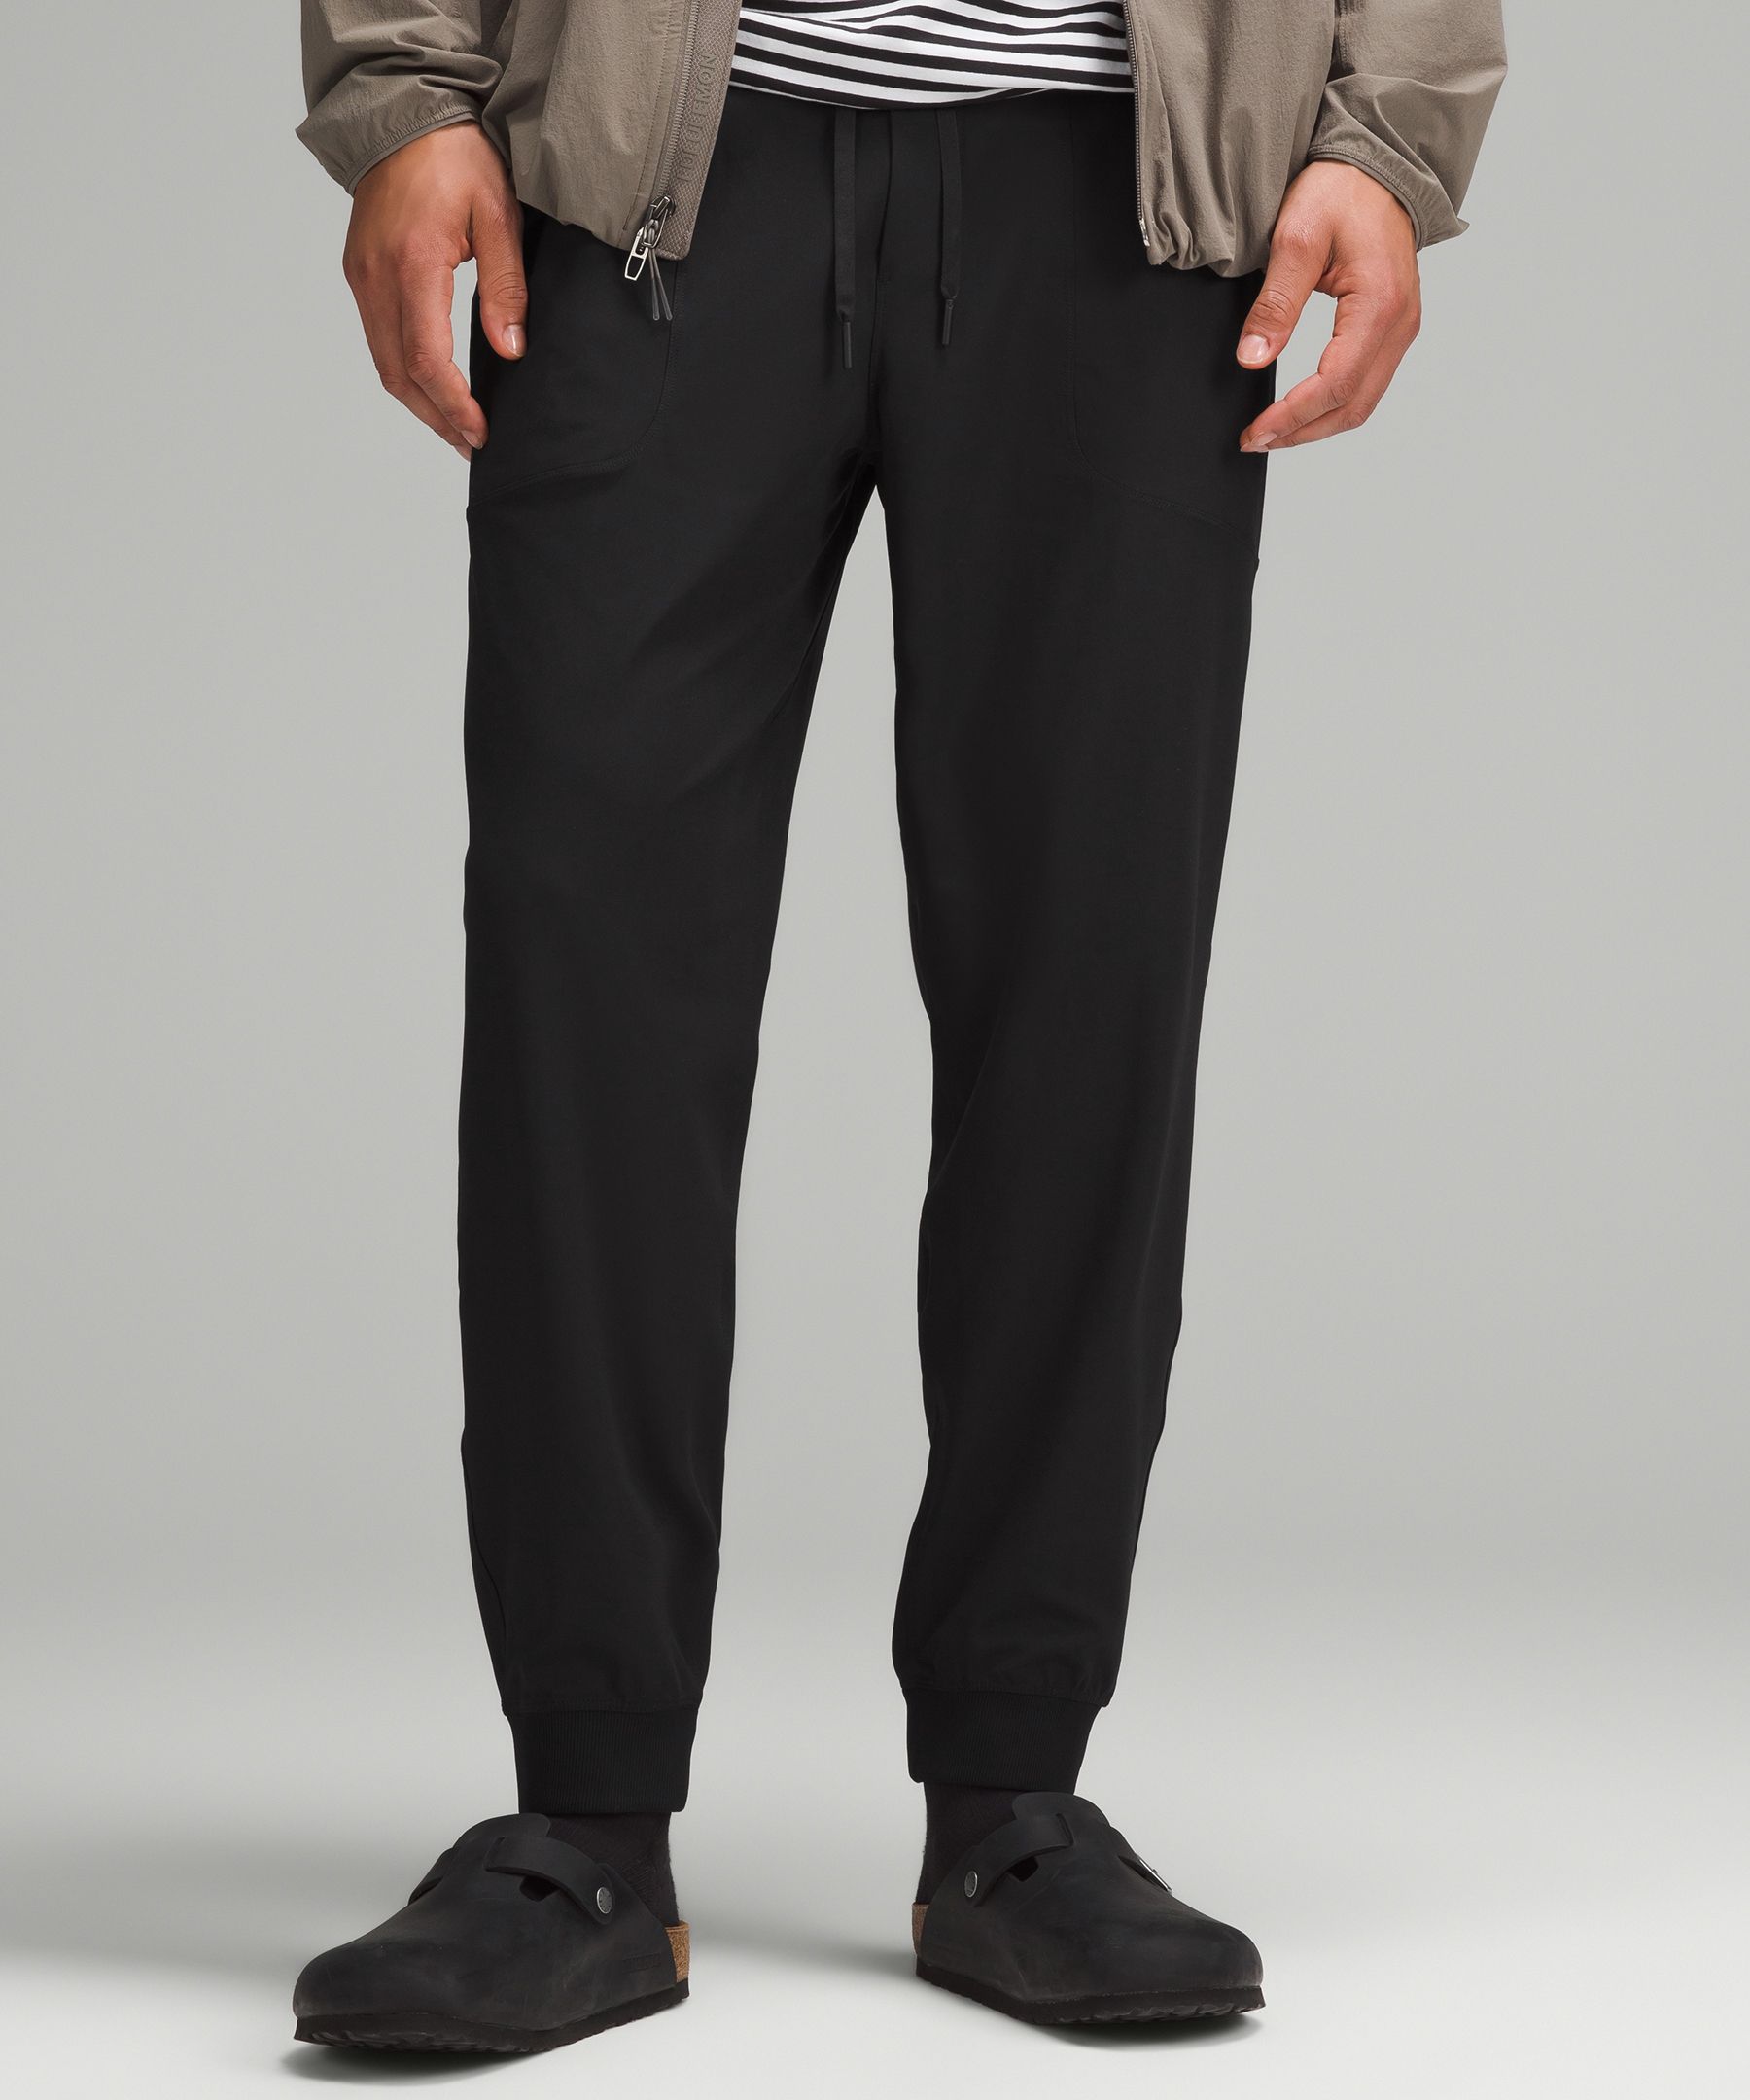 lululemon ABC Jogger Canvas - Graphite Grey, Clothing